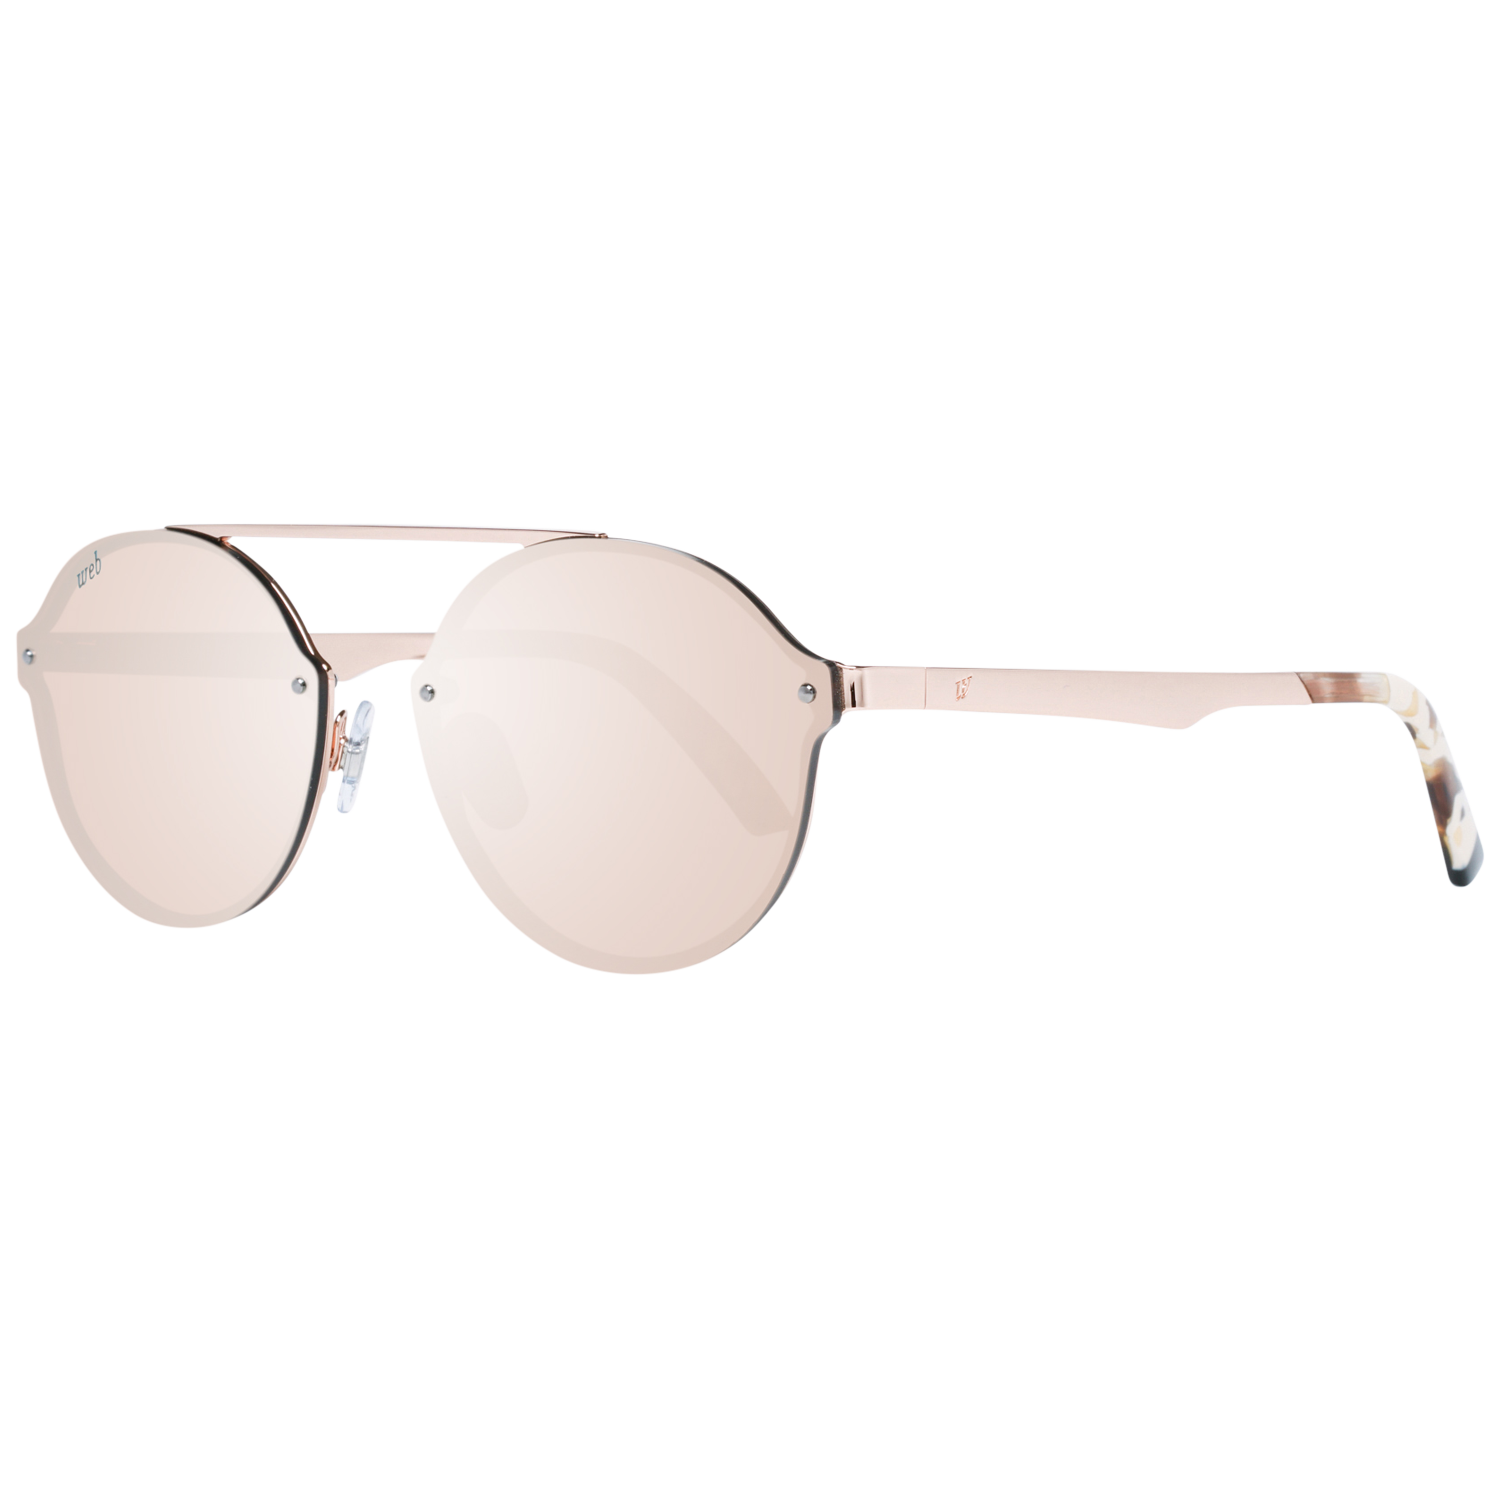 Web Sunglasses WE0181 34G 58